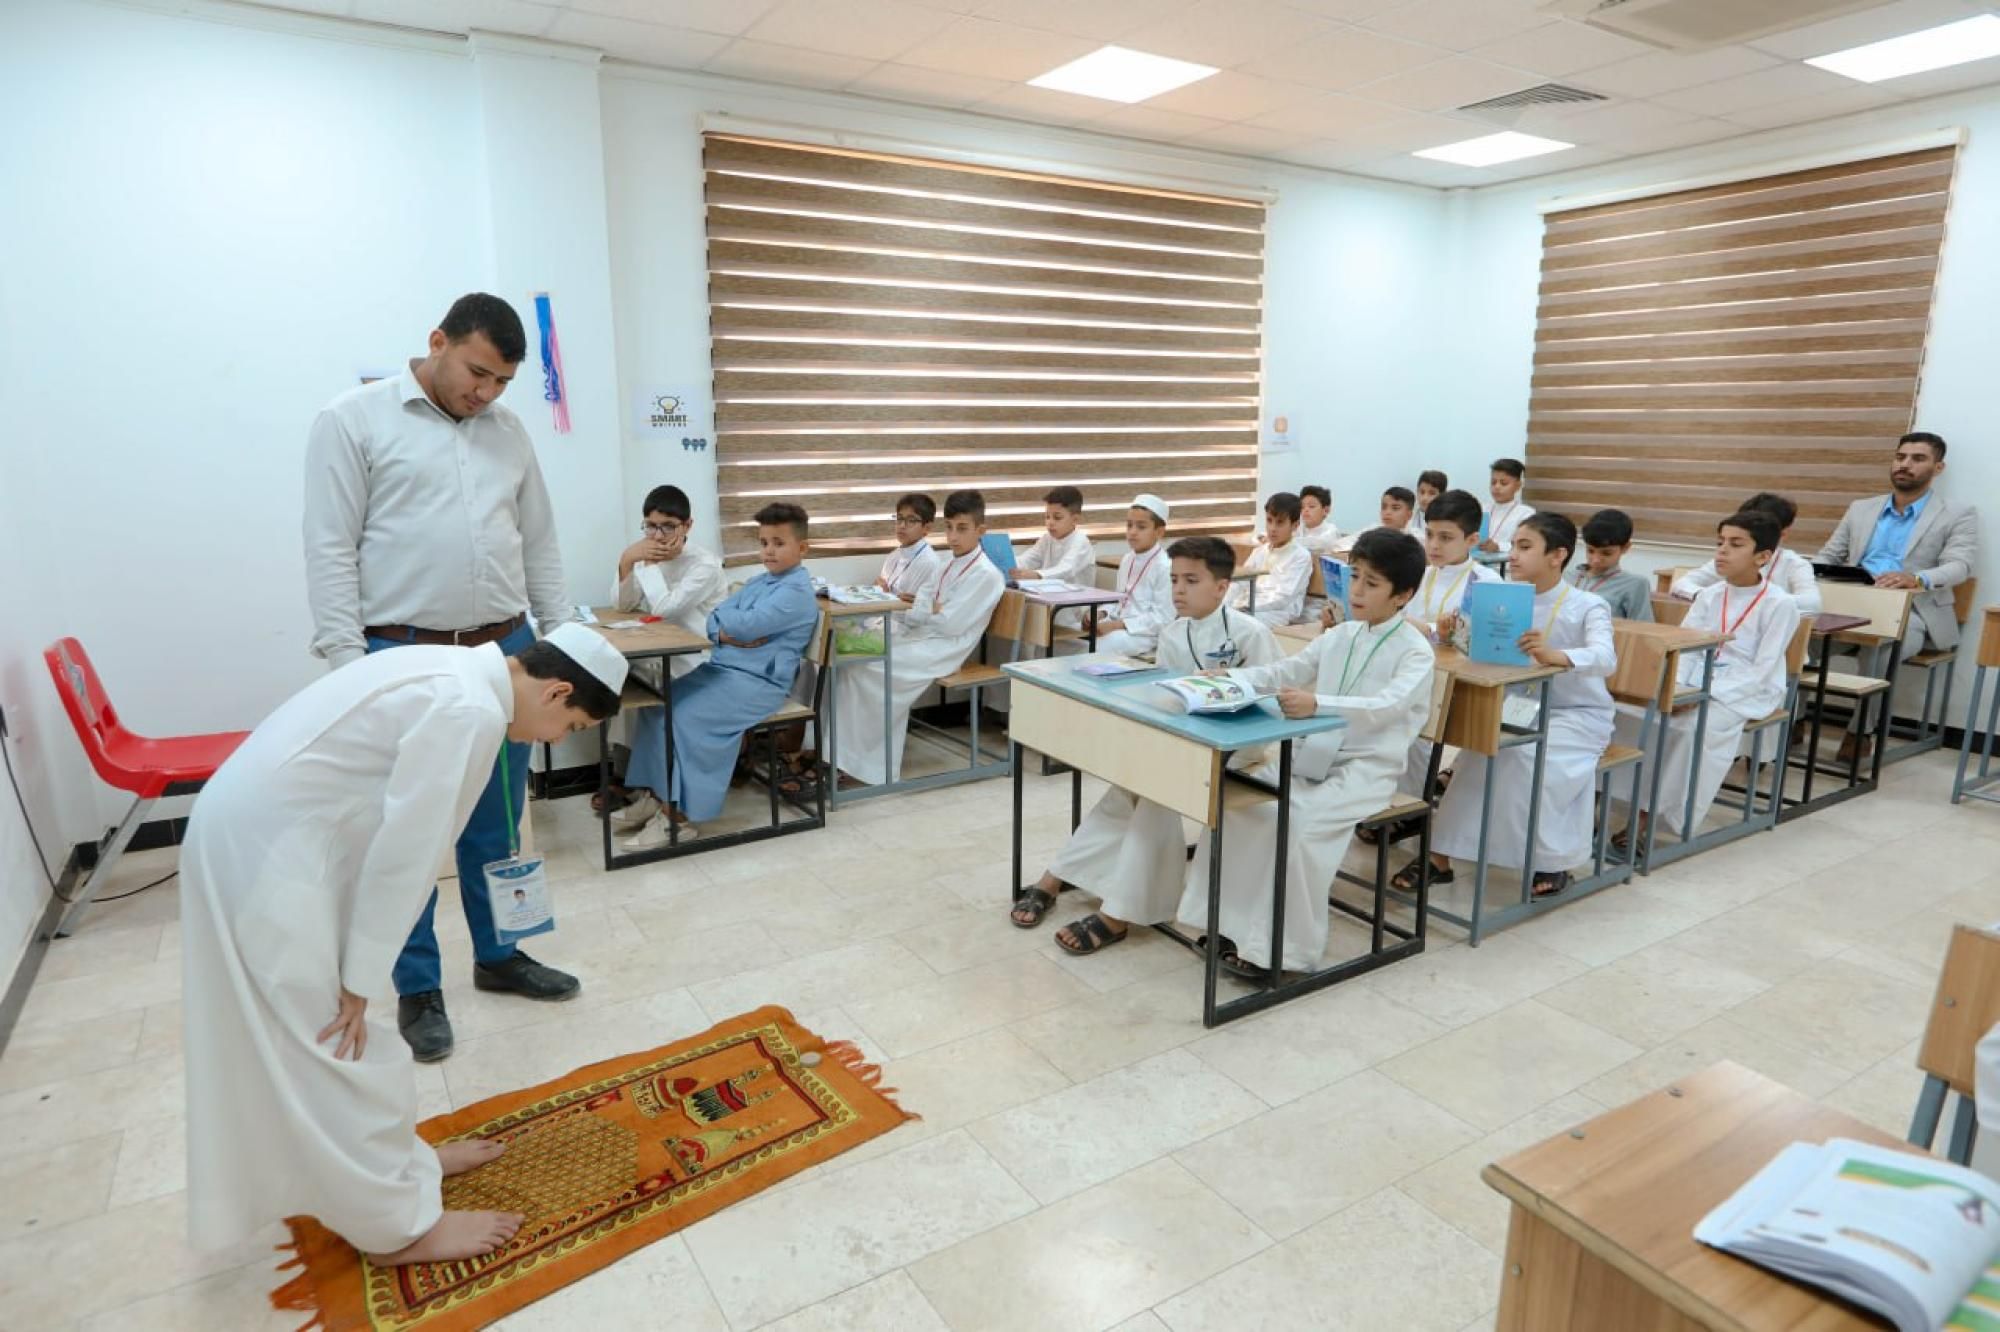 للأسبوع الثالث.. مشروع الدورات القرآنية يشهد تفاعلًا كبيرًا من قبل الطلاب